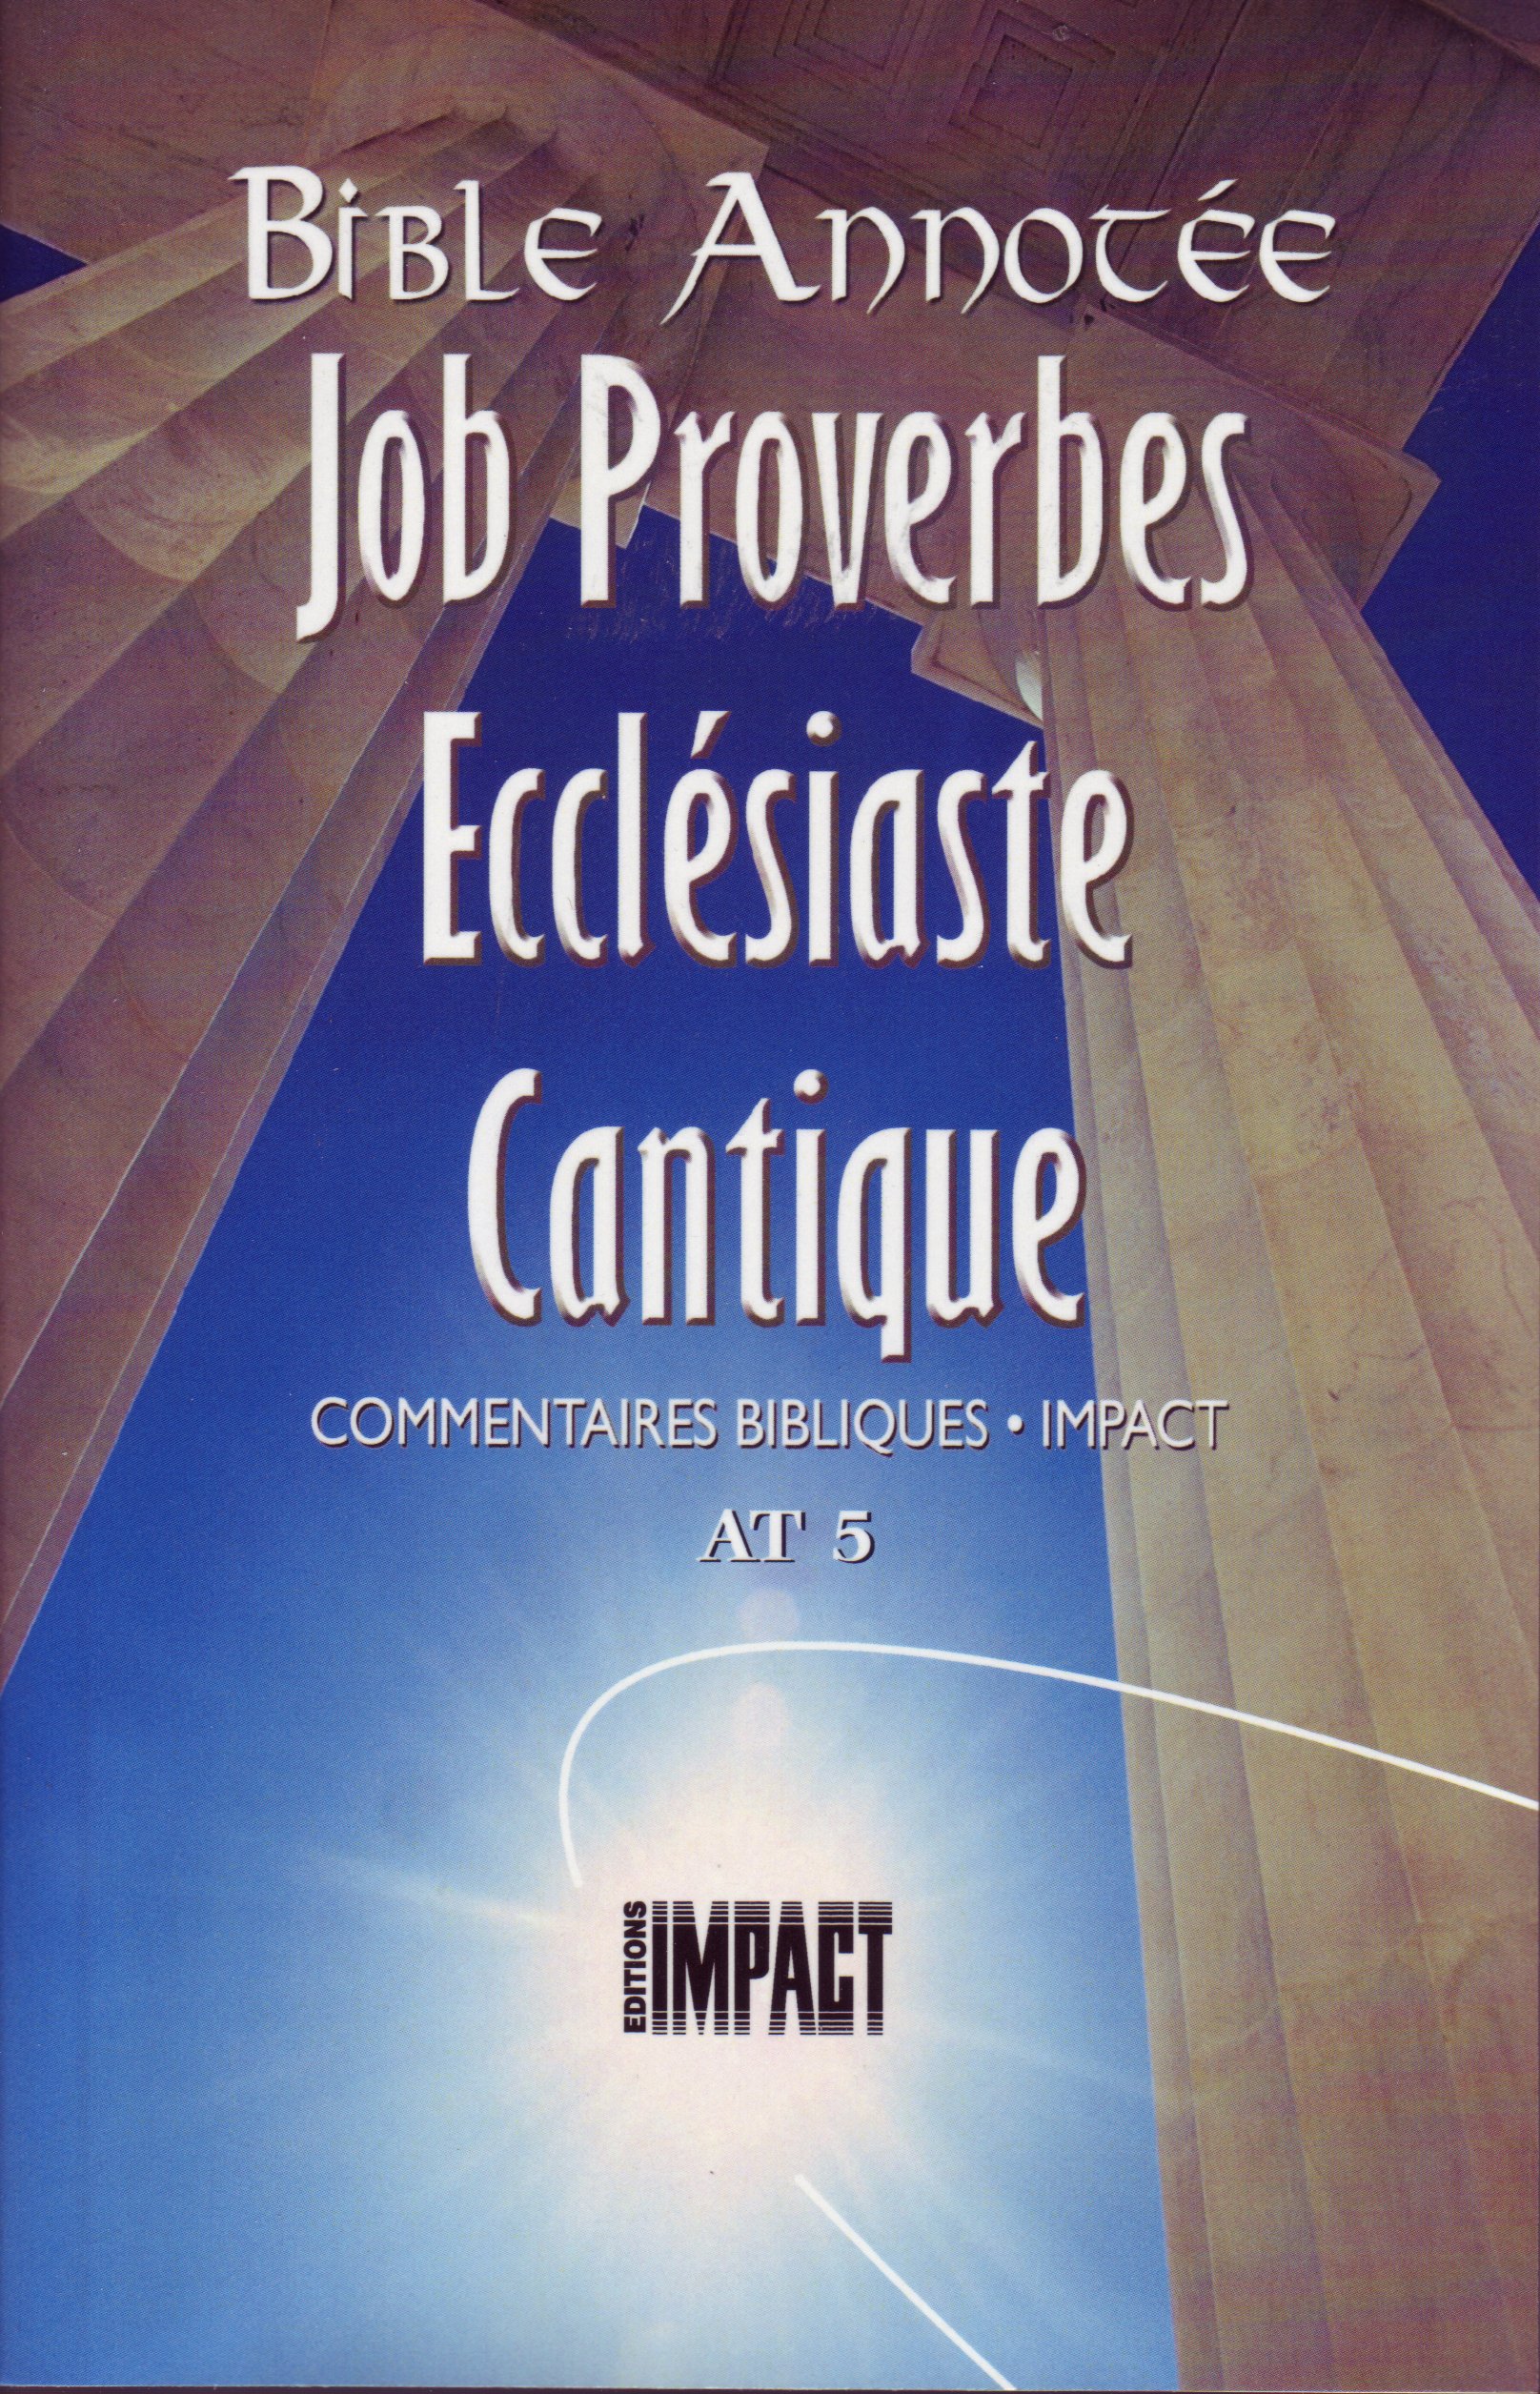 Bible Annotée (La), Job Proverbes Ecclésiate Cantiques - Commentaires bibliques Impact AT 5